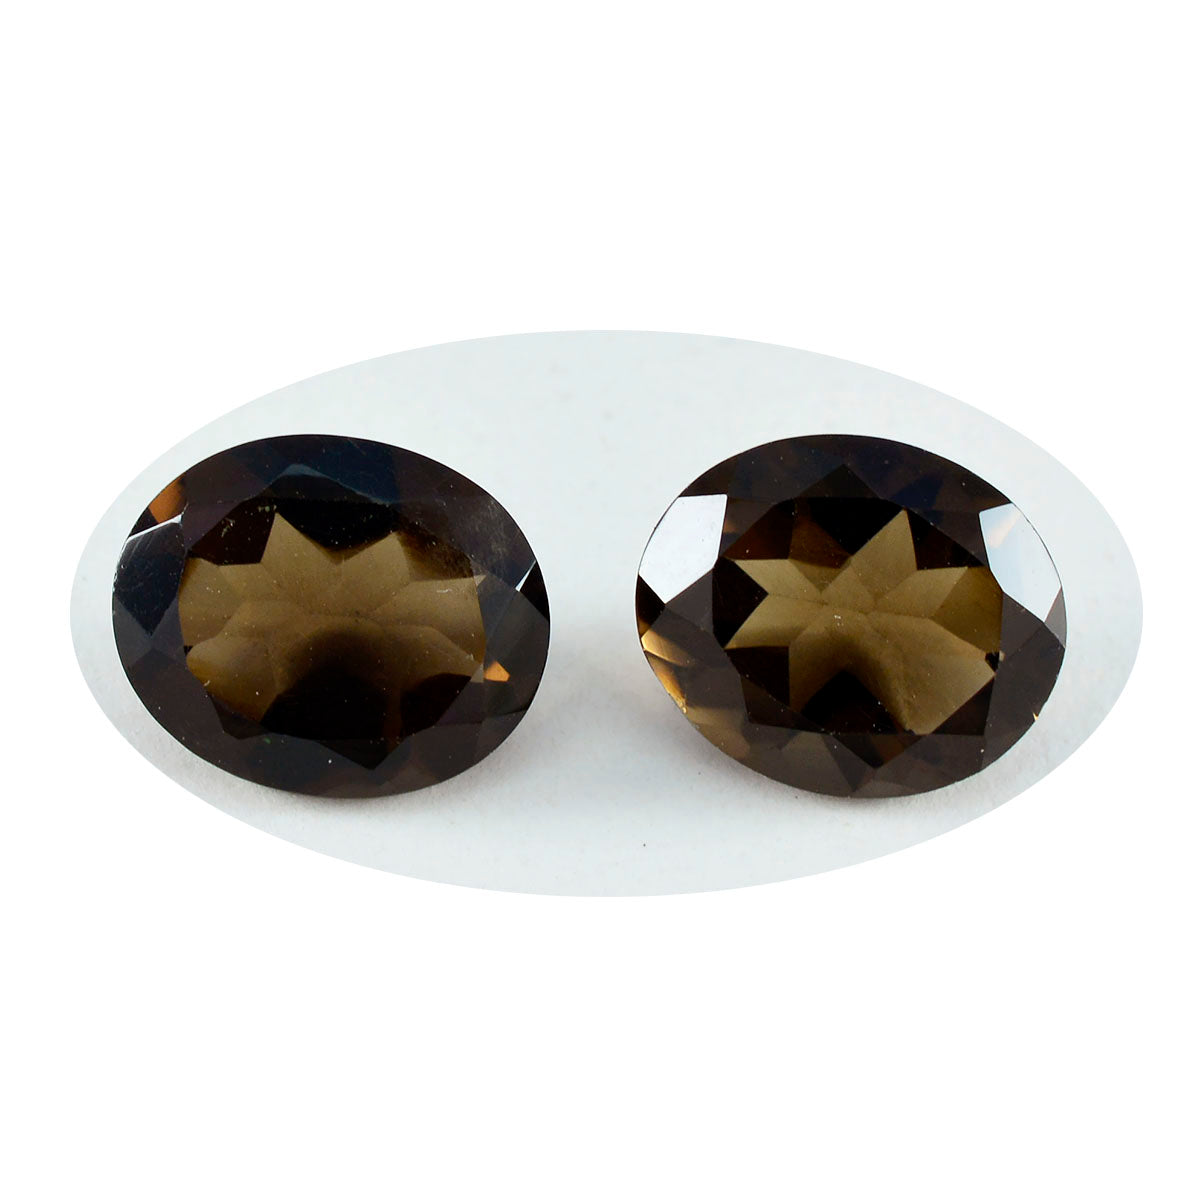 Riyogems 1 pièce de quartz fumé marron véritable à facettes 8x10mm forme ovale belles pierres précieuses en vrac de qualité